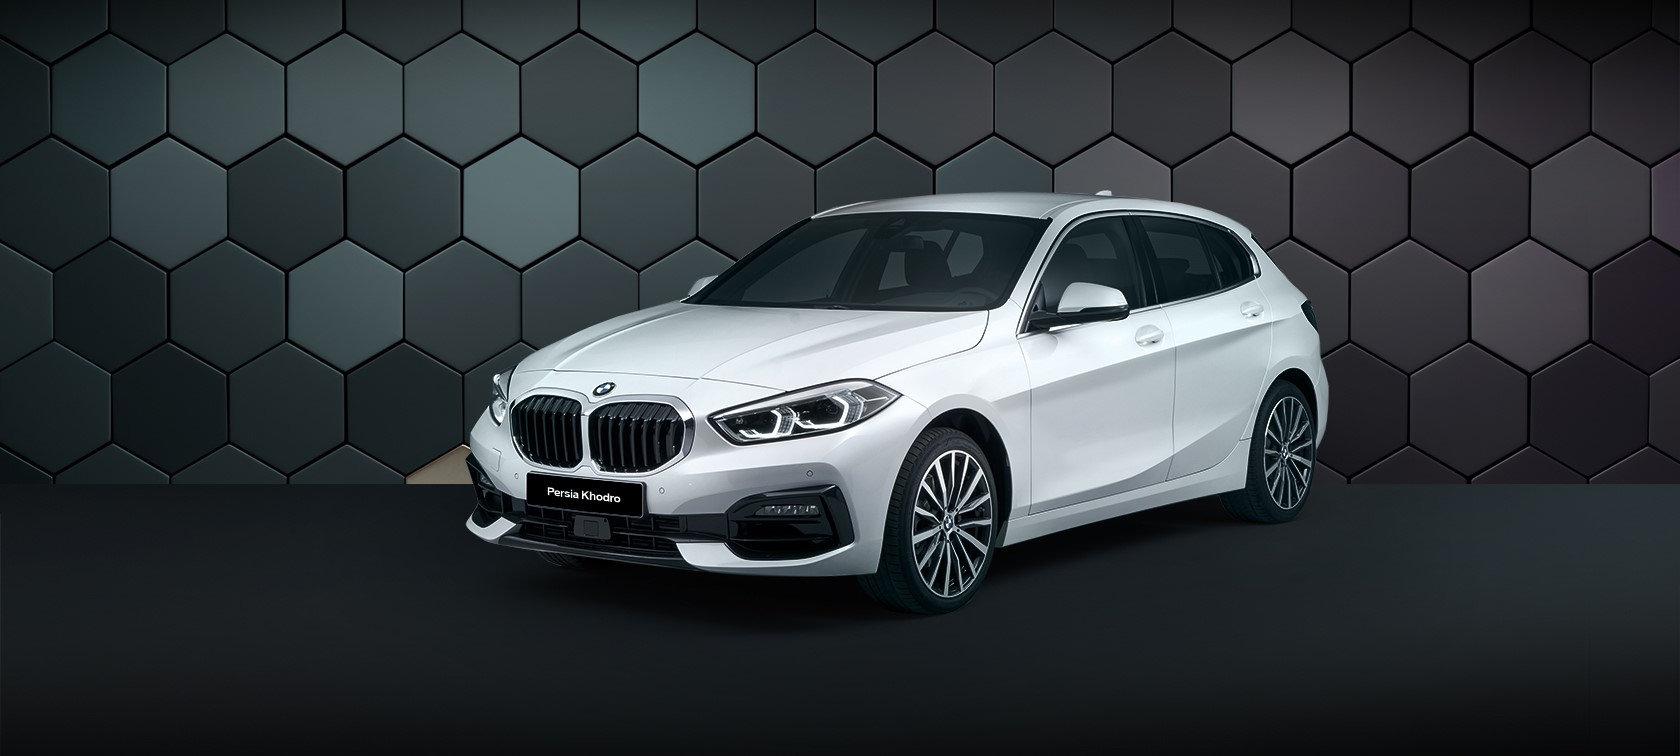 ثبت نام محدود BMW 116i، ویژه جانبازان سرافراز 